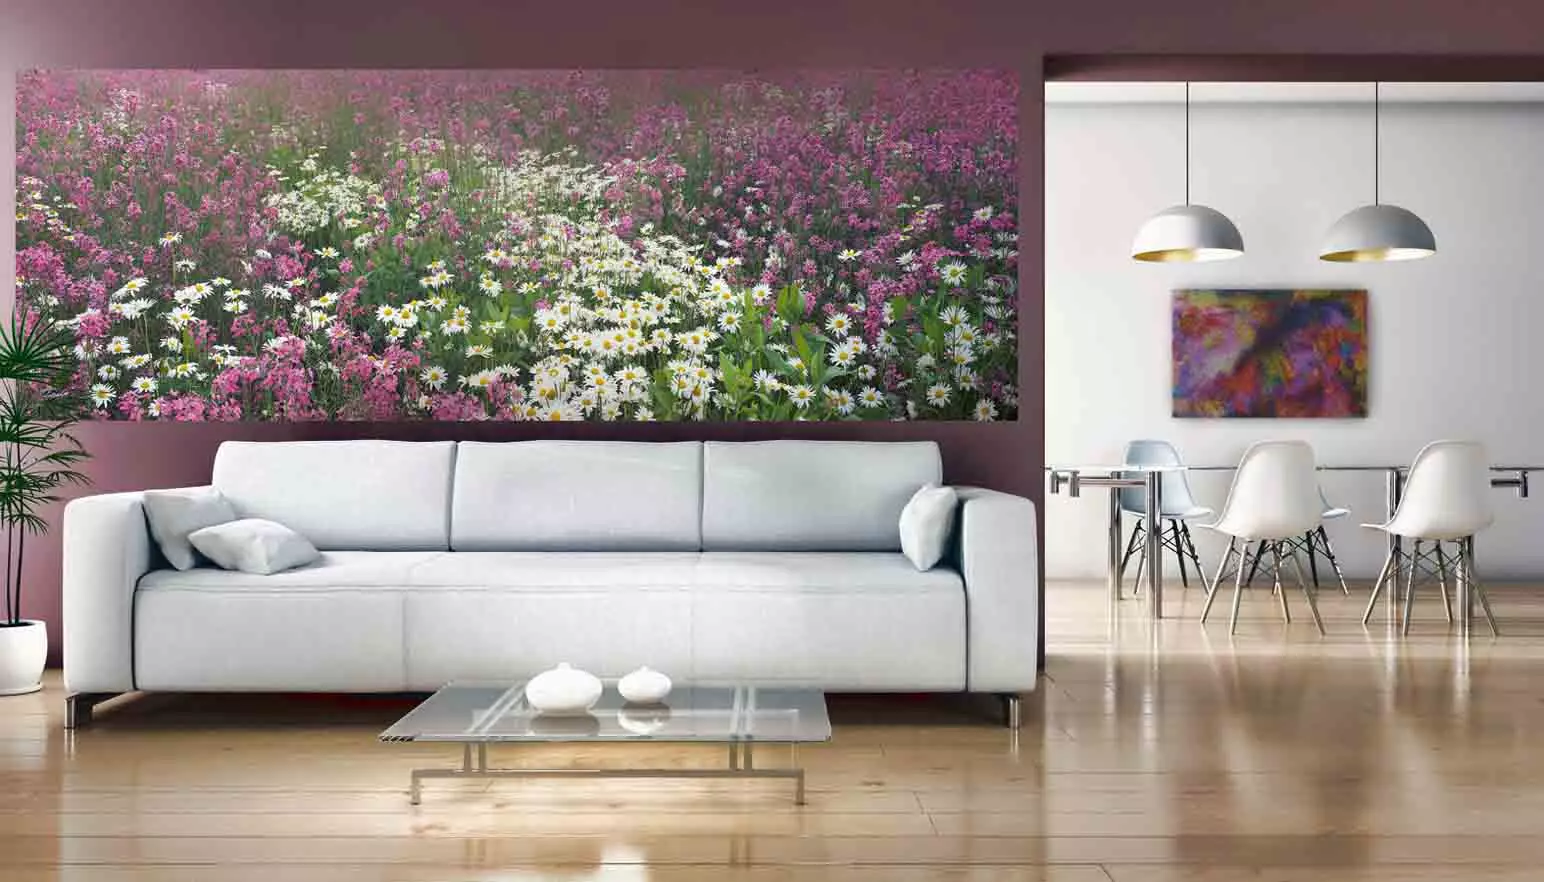 Зидна мурал са цветним мотивима - невероватна екстраваганцијама боја